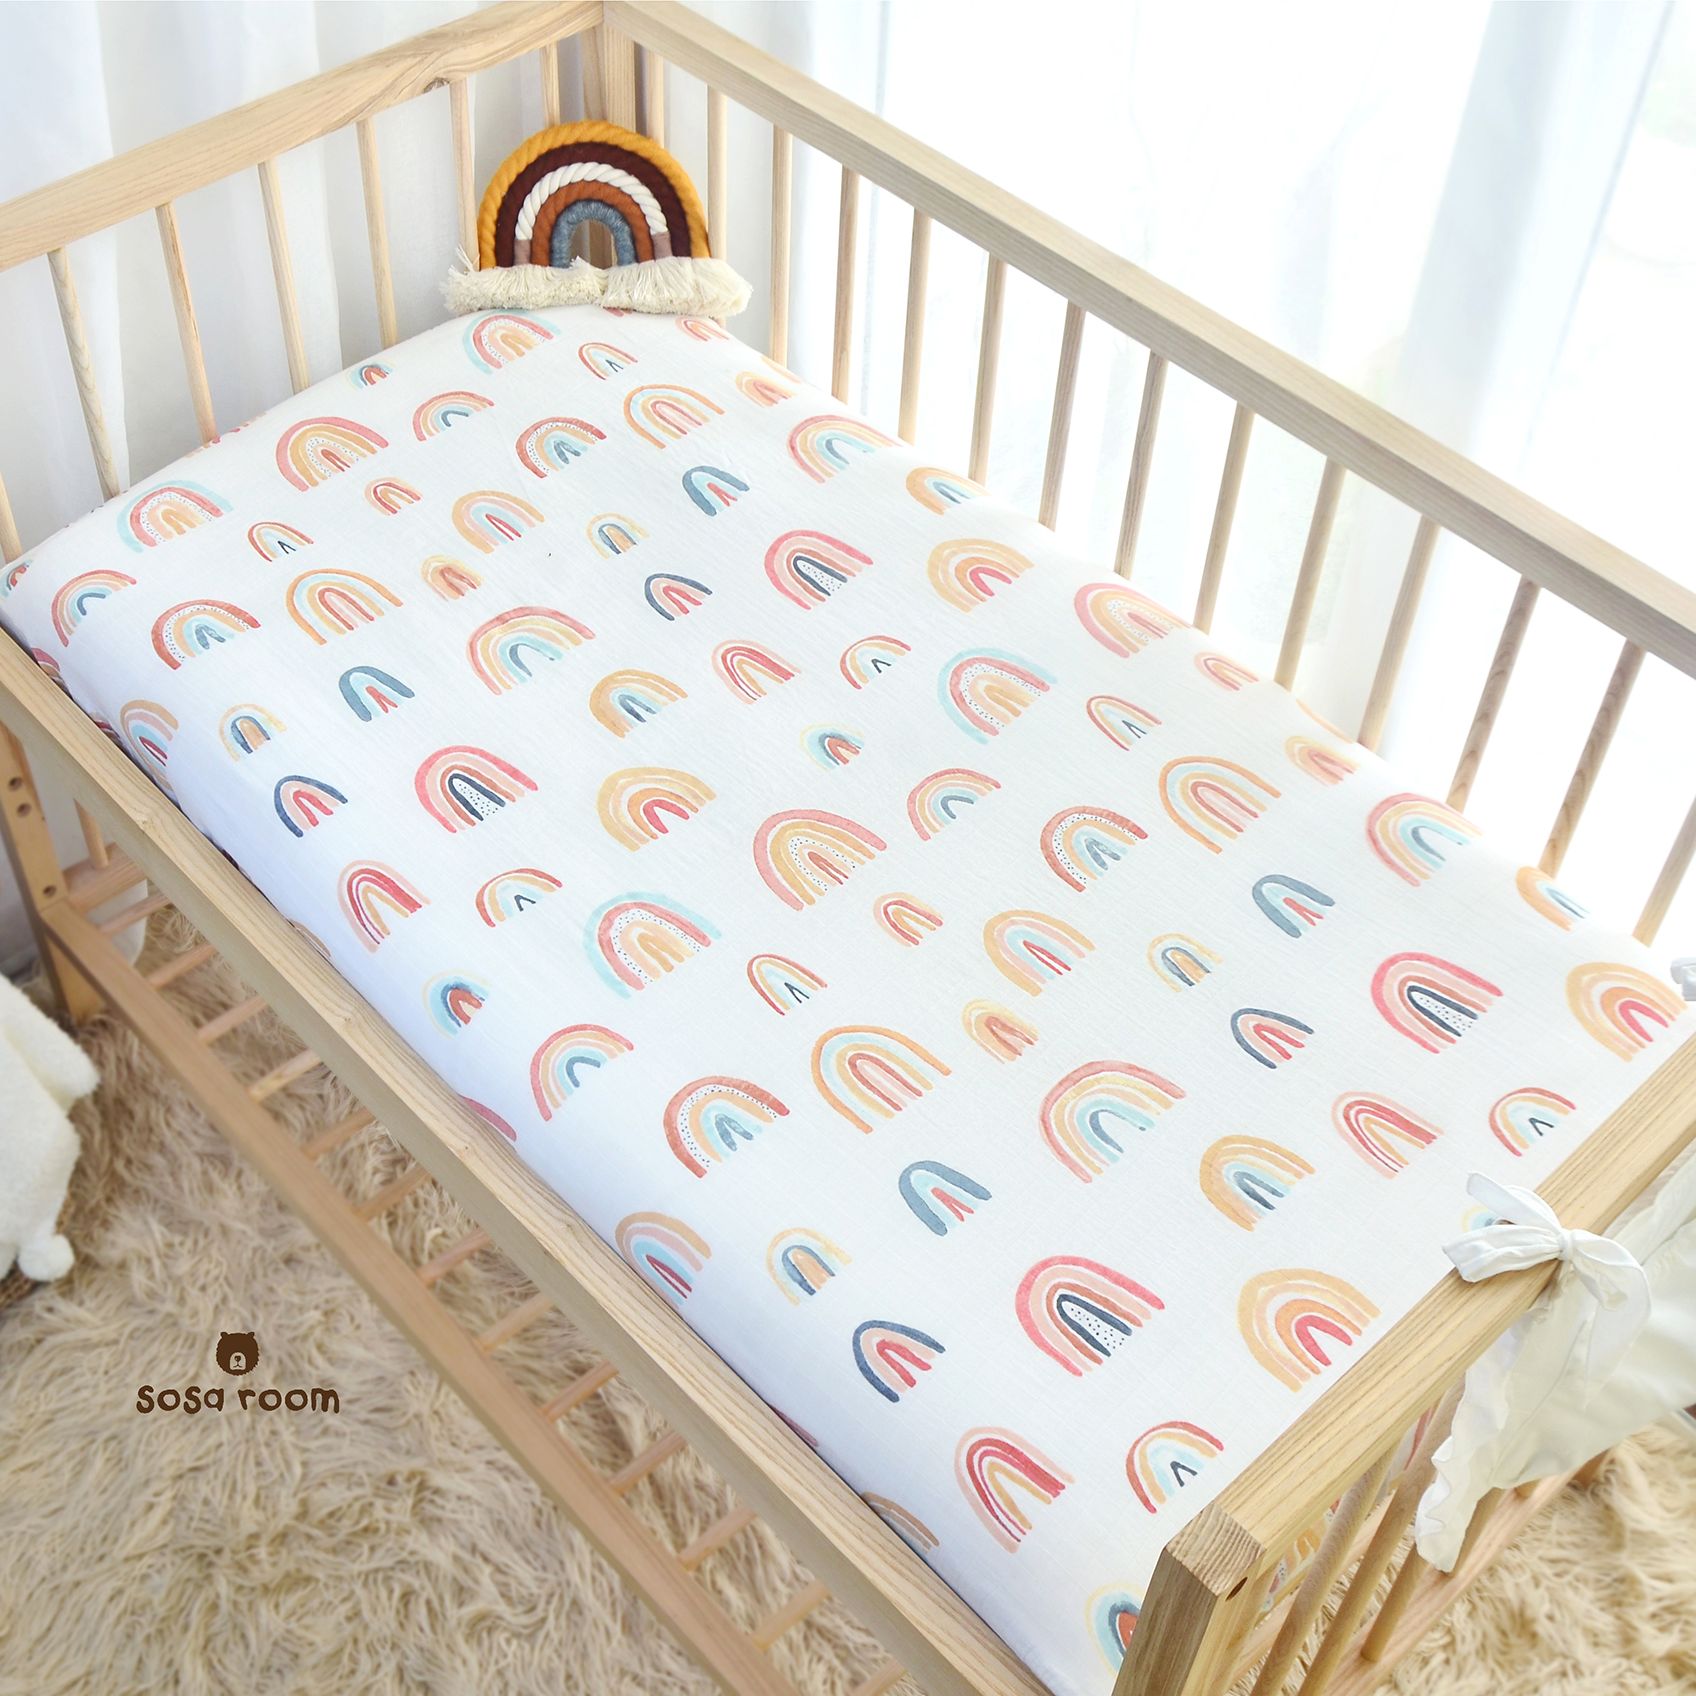 11 mẫu Ga drap bọc nệm cũi giường cho bé, sợi gạc 6 lớp, hoạ tiết dễ thương